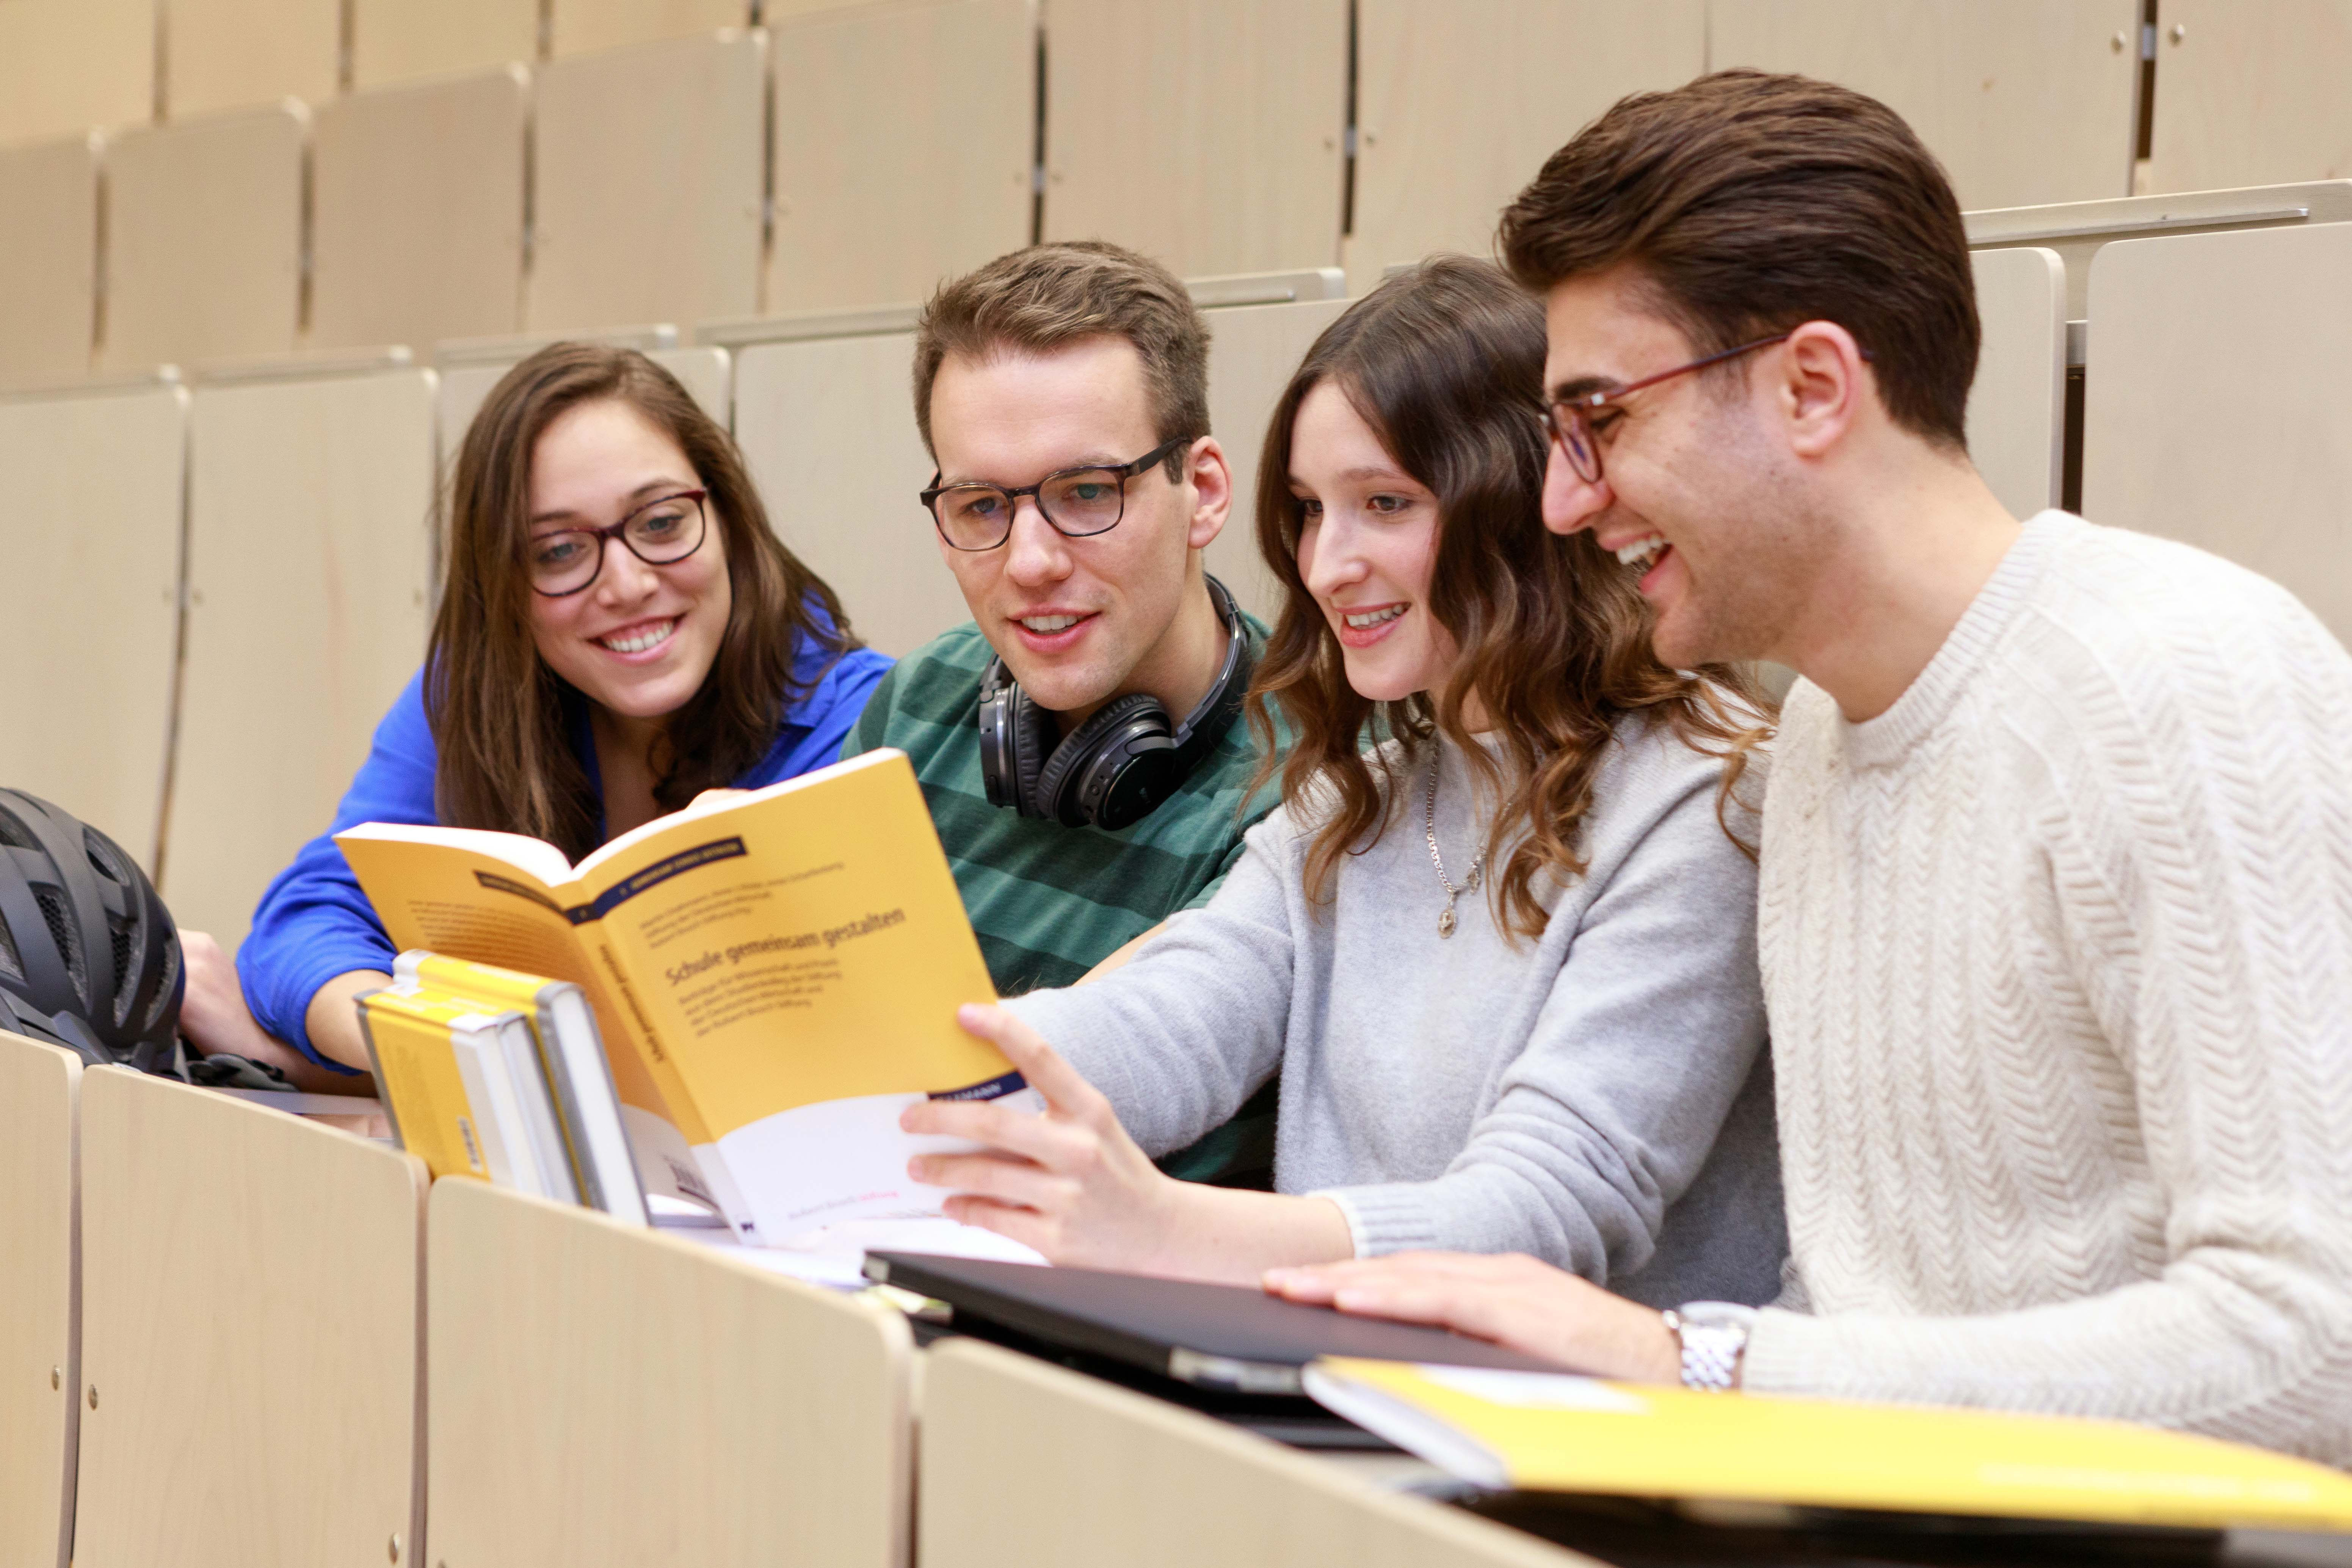 Как получить образование в Германии через studienkolleg в 2021 году